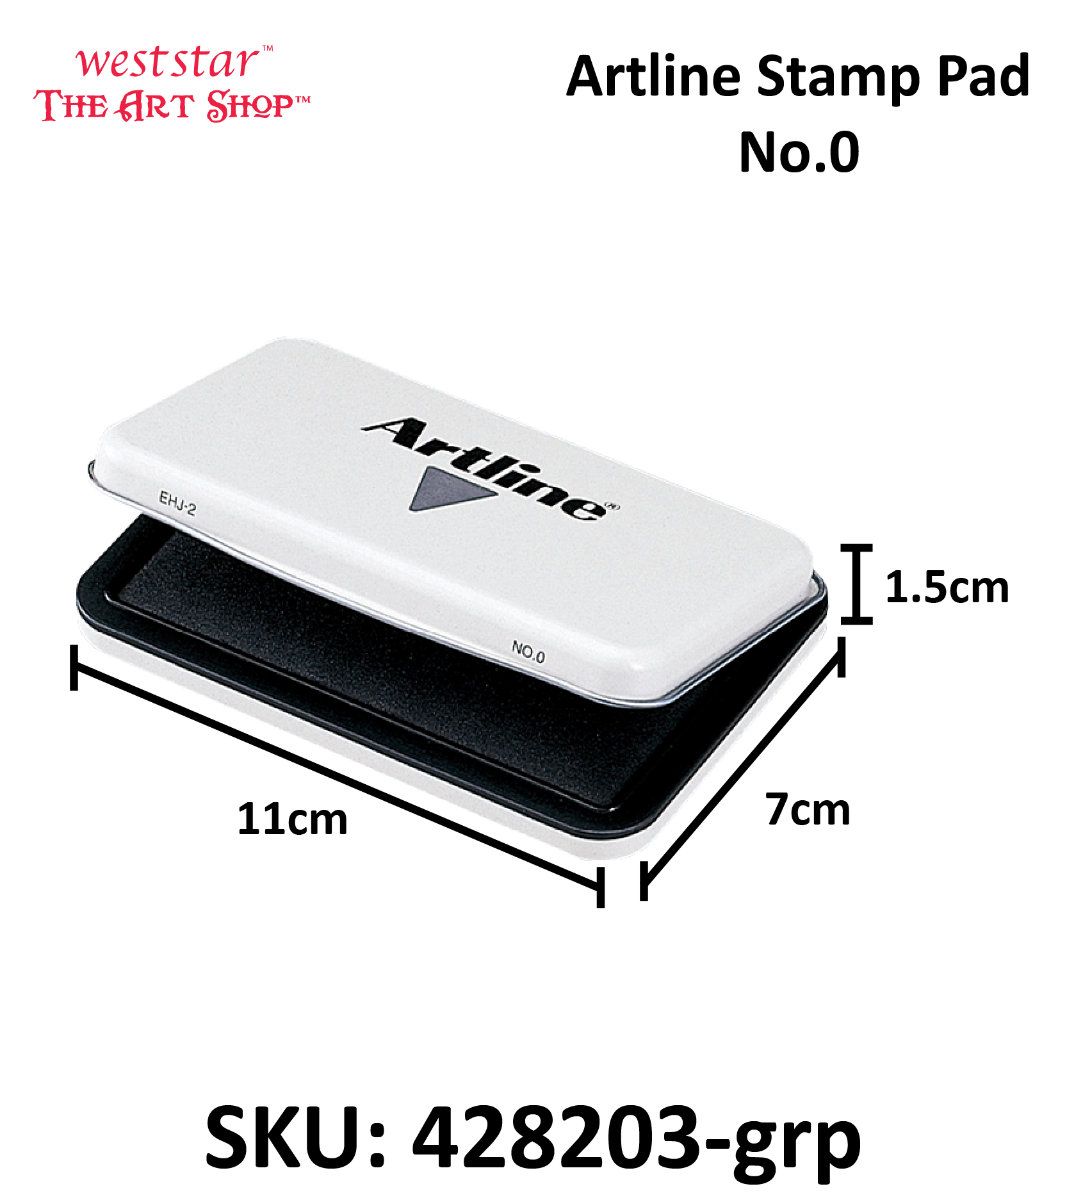 Artline STAMP PAD Artline STAMP PAD No.0, Products